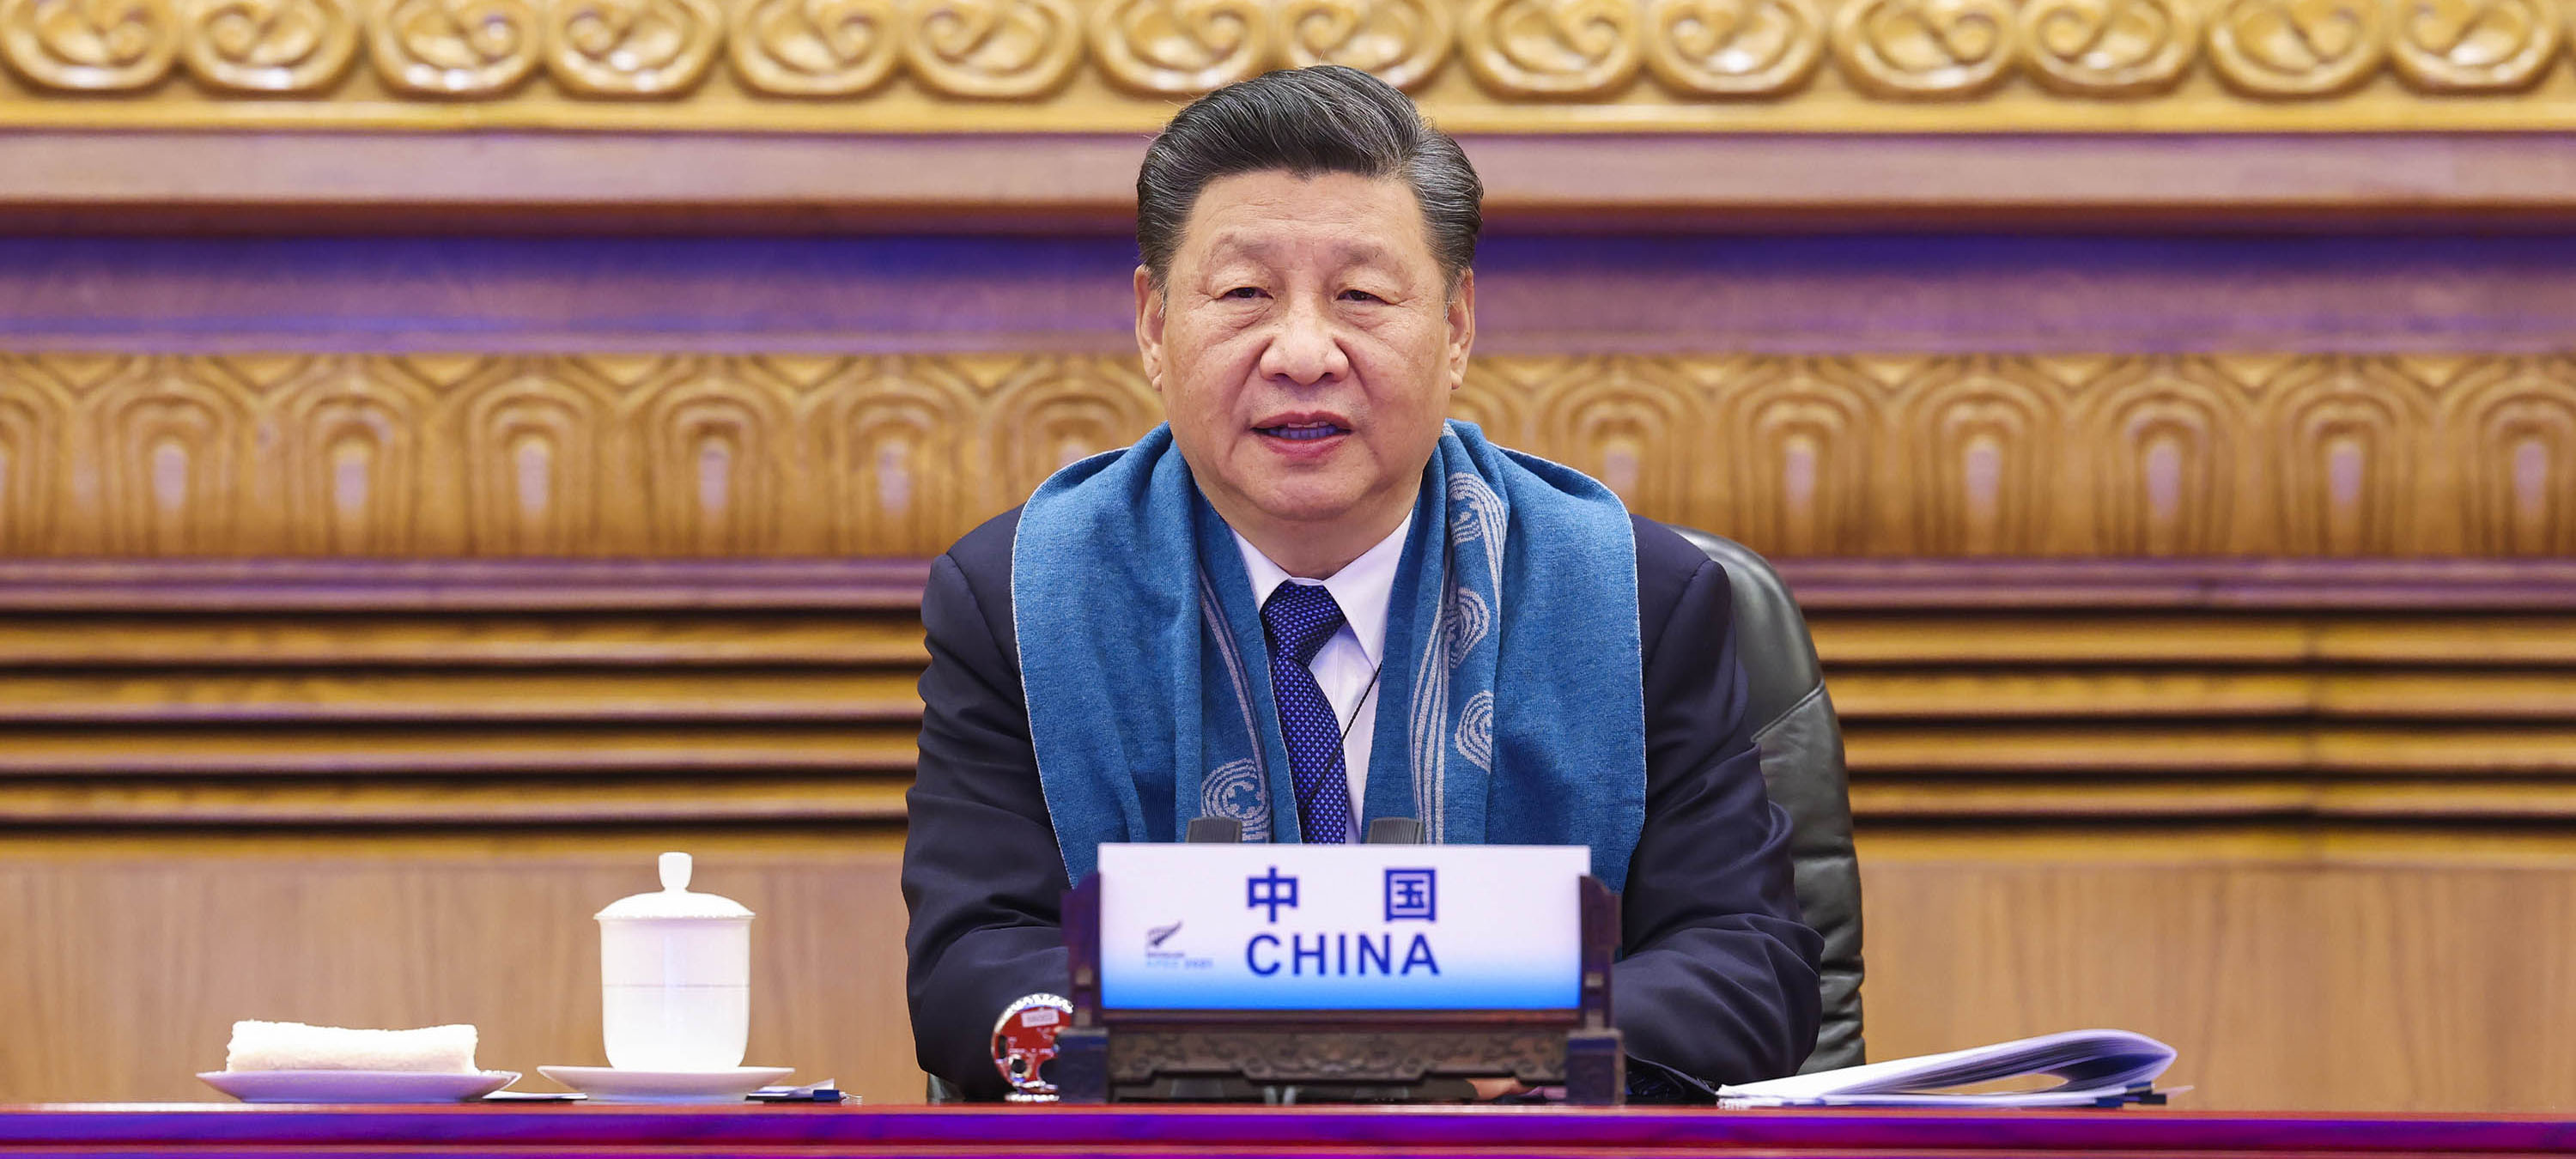 Xi participa da reunião de líderes econômicos da APEC por videoconferência